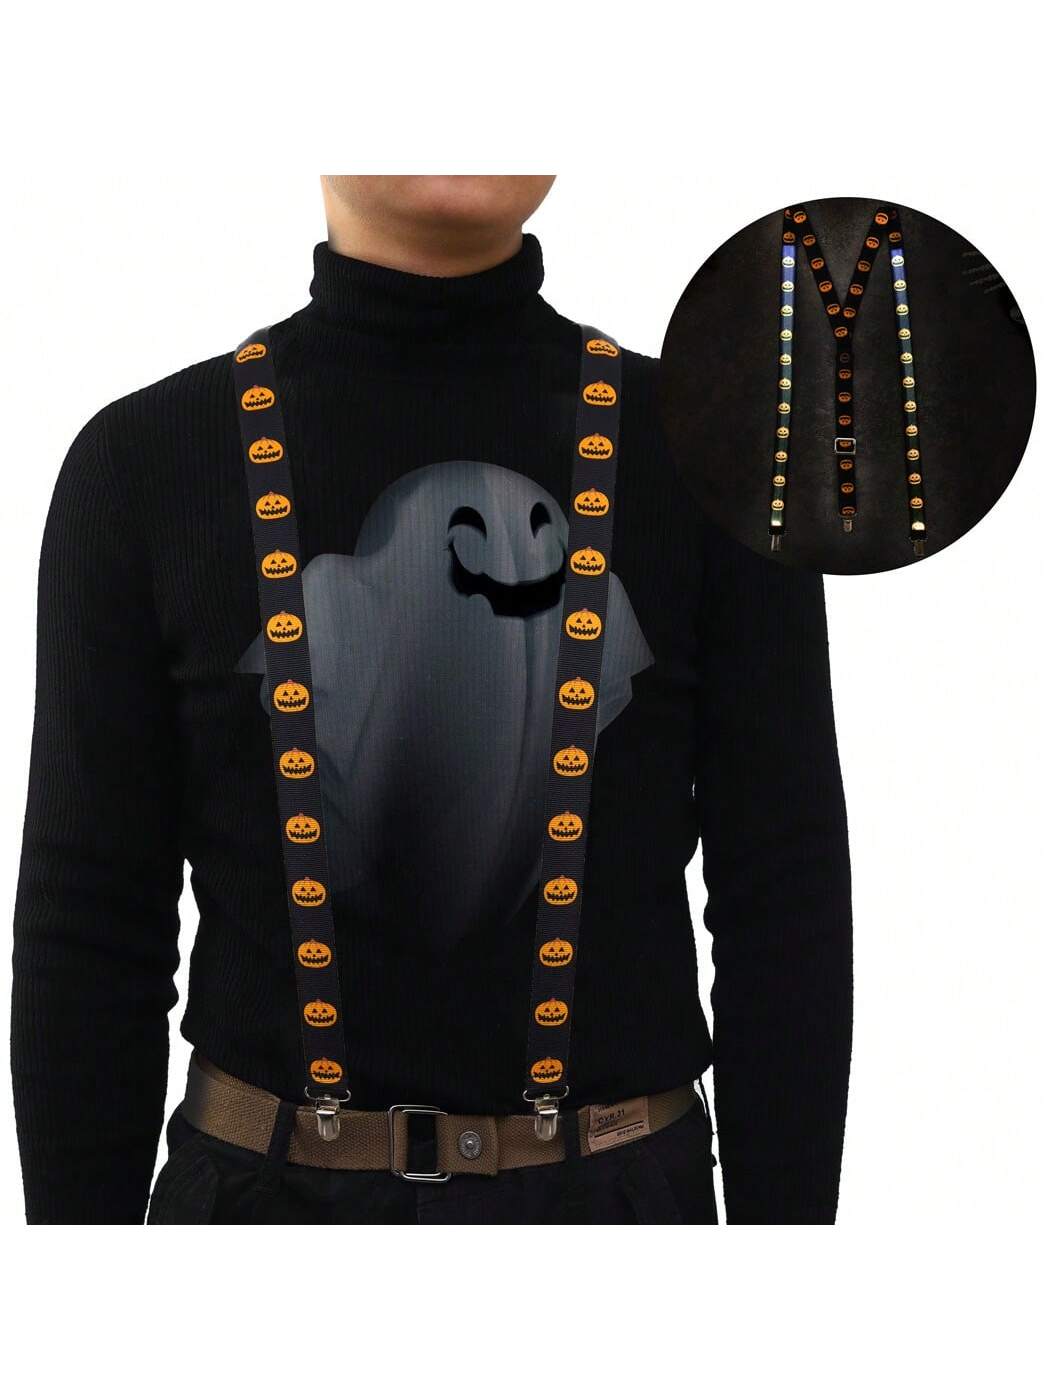 DRESBE светодиодные подтяжки с подсветкой, черный костюм красного дьявола для мальчиков косплей до щиколотки костюм на хэллоуин детский костюм для ролевых игр одежда для косплея